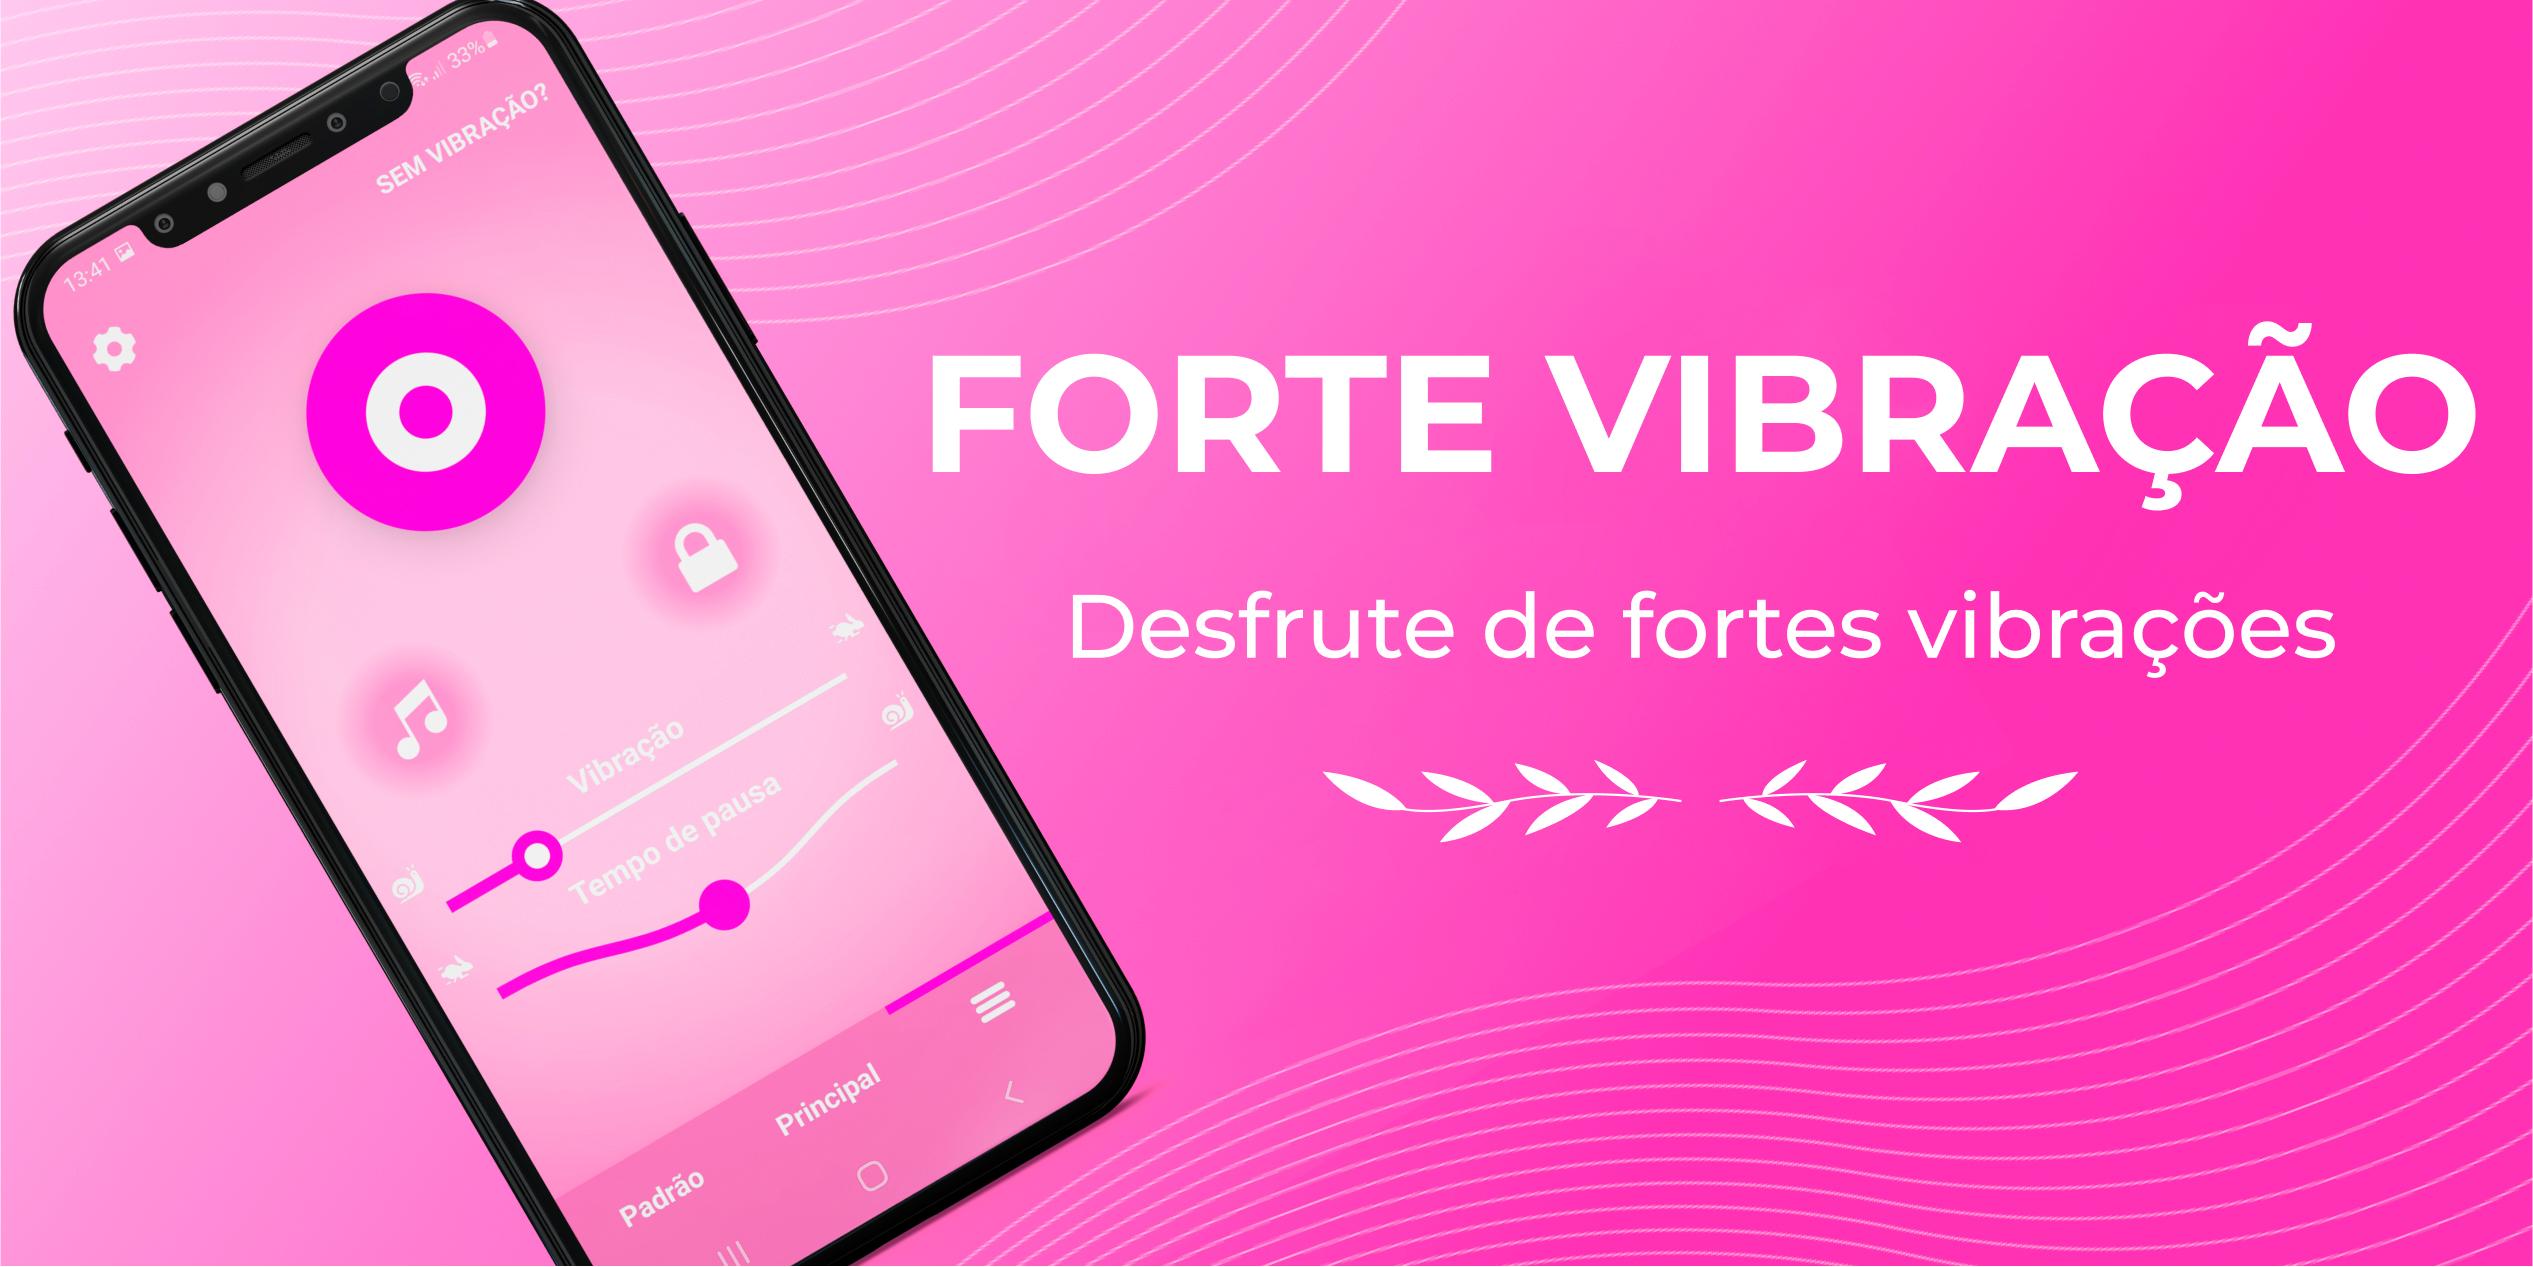 Download do APK de Vibrador Vibracao Forte App para Android